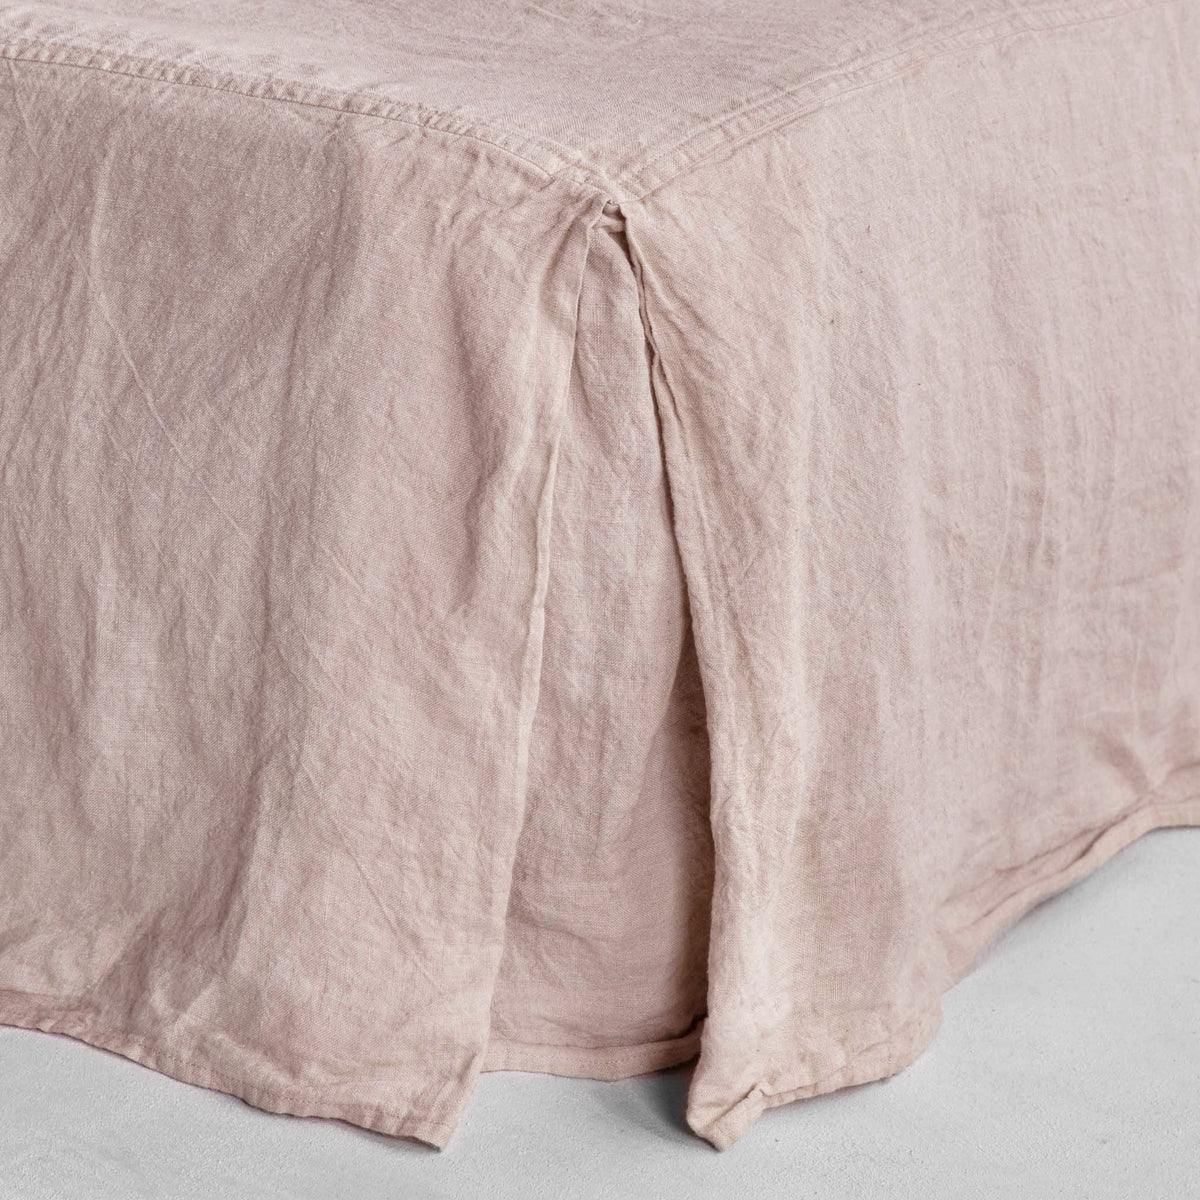 Basix Linen Bed Skirt/Valance - Floss